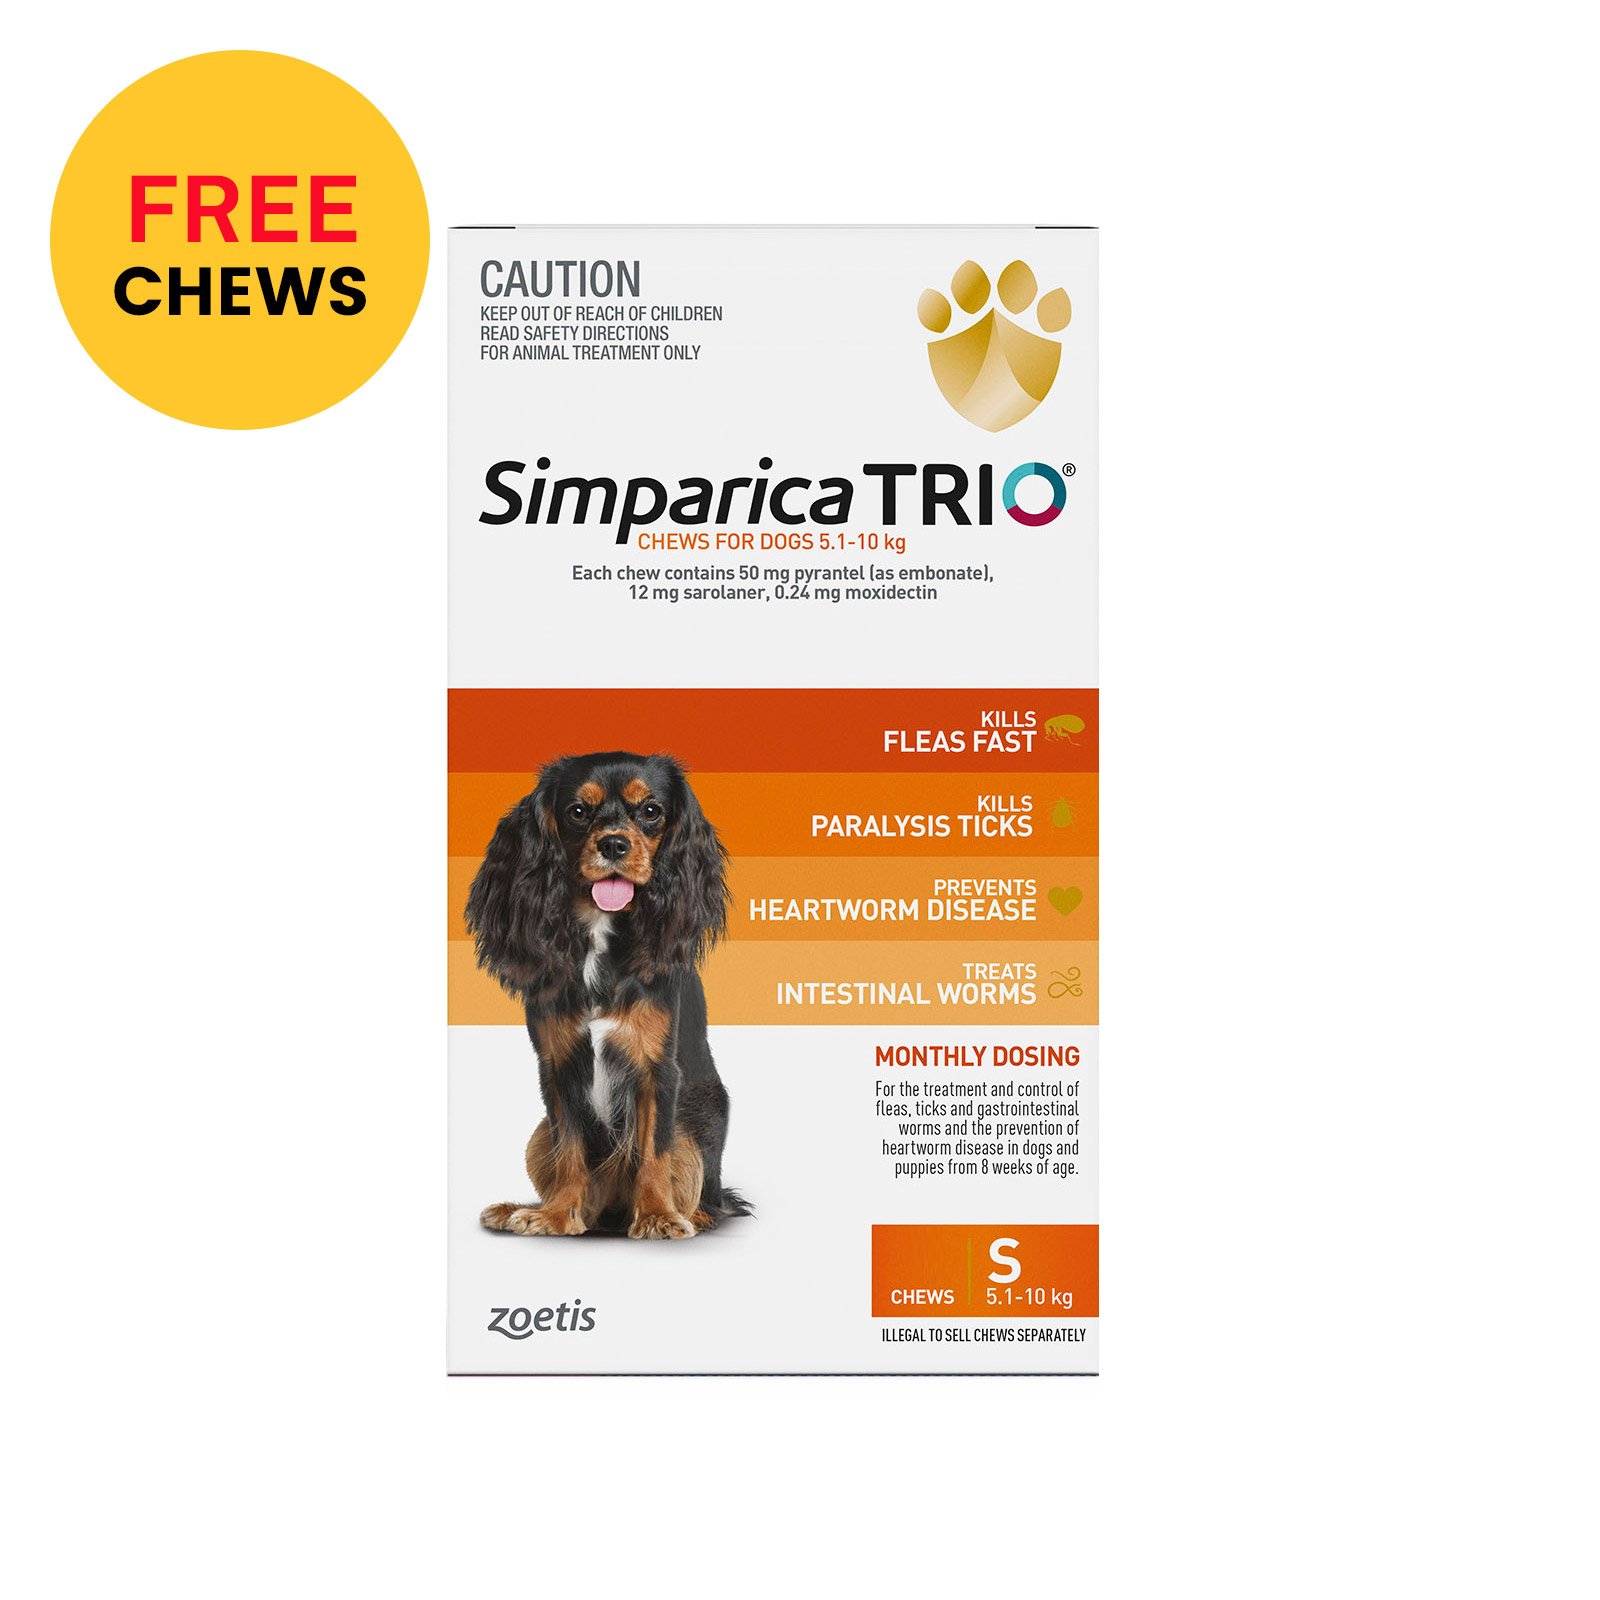 Simparica TRIO for Small Dogs 5.1-10kg (Orange)